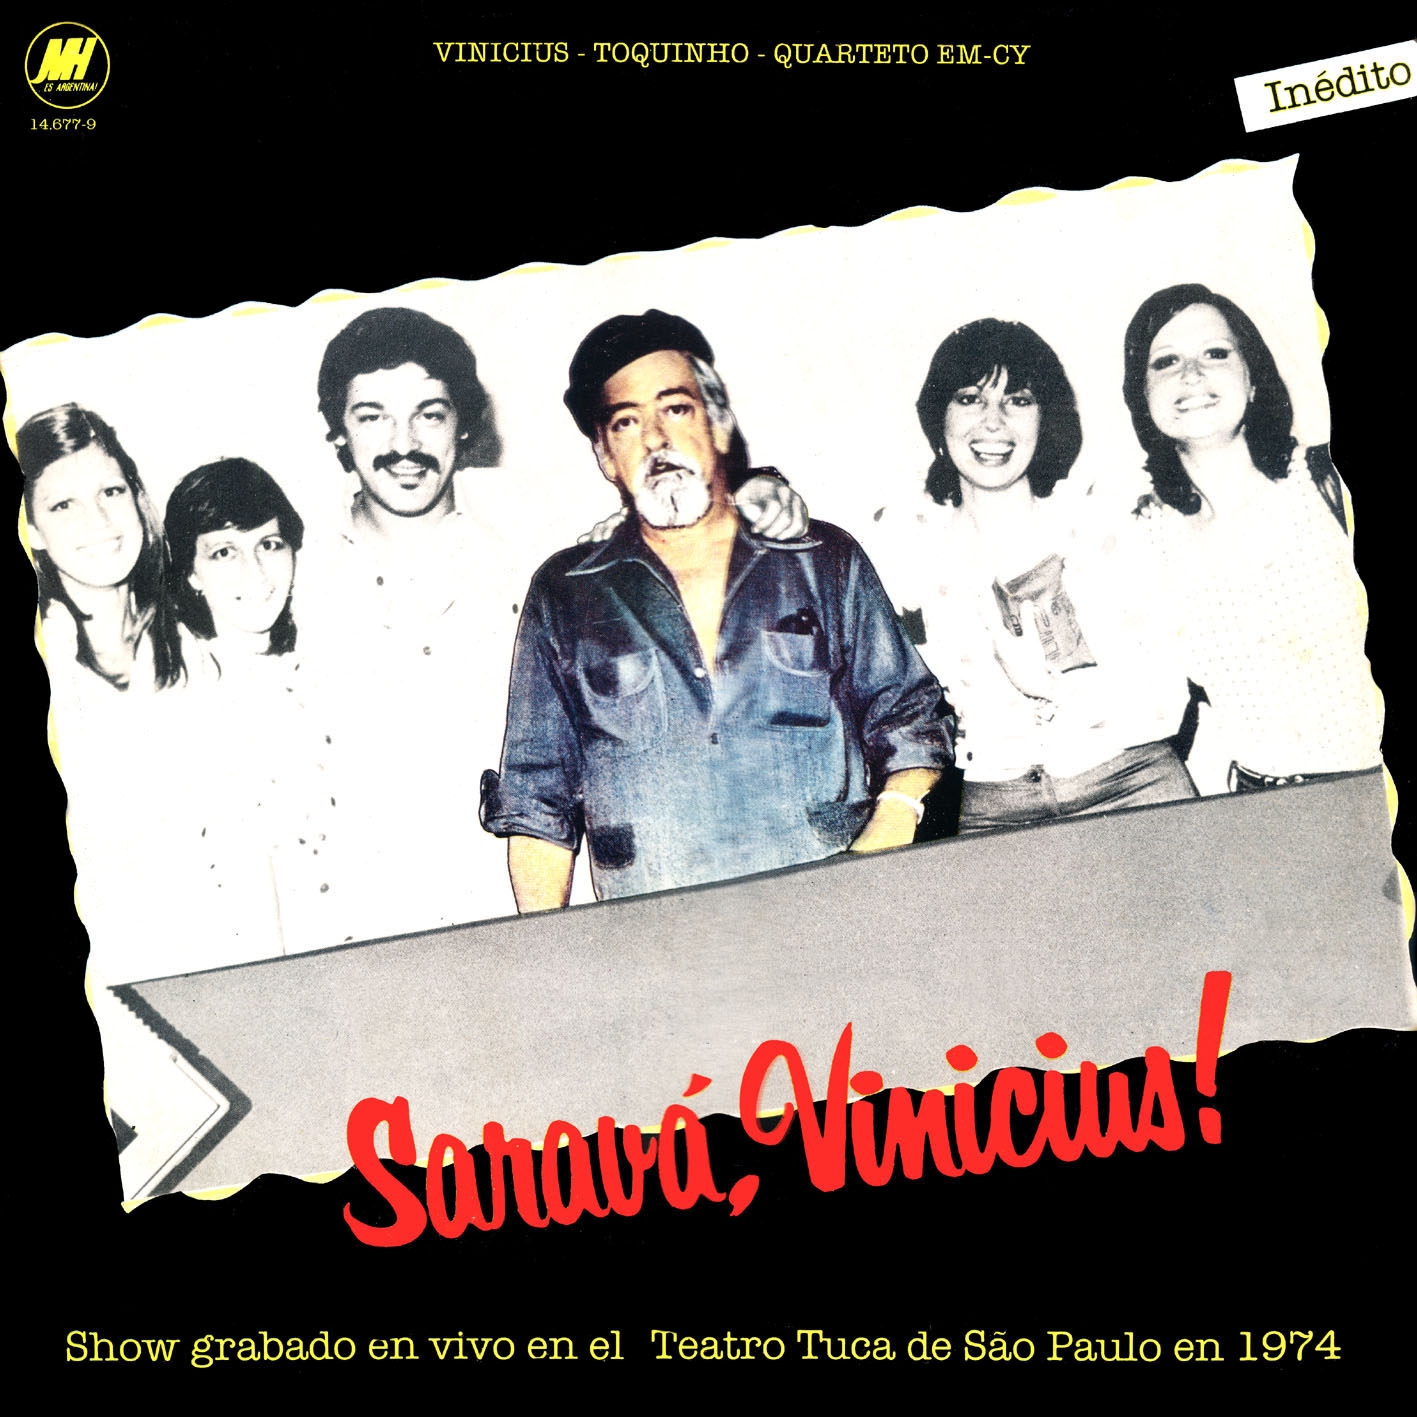 [Vinicius+de+Moraes,+Toquinho+&+Quarteto+em+Cy+-+1974+-+Saravá,+Vinicius.jpg]